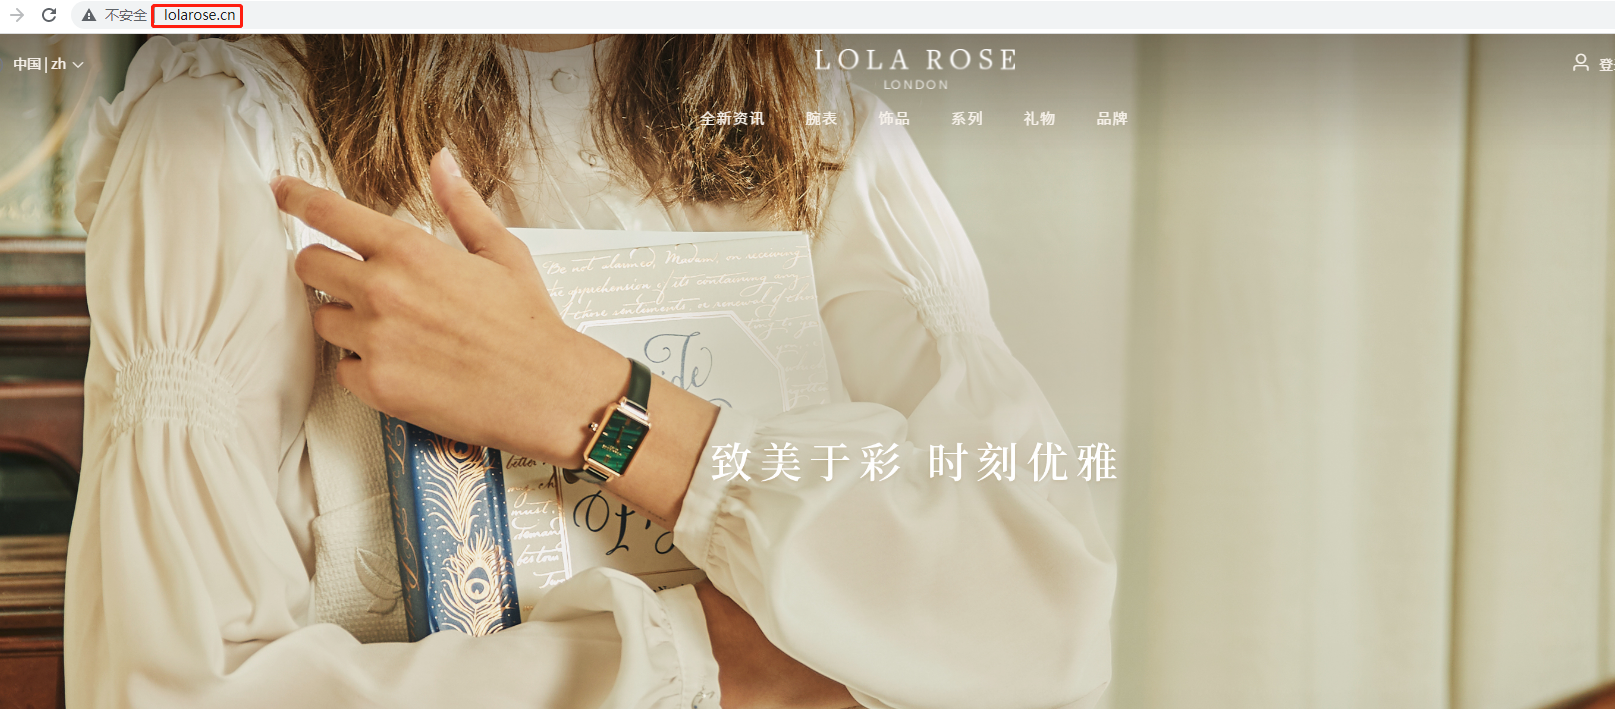 终端收购品牌域名LolaRose.cn和LolaRose.com.cn